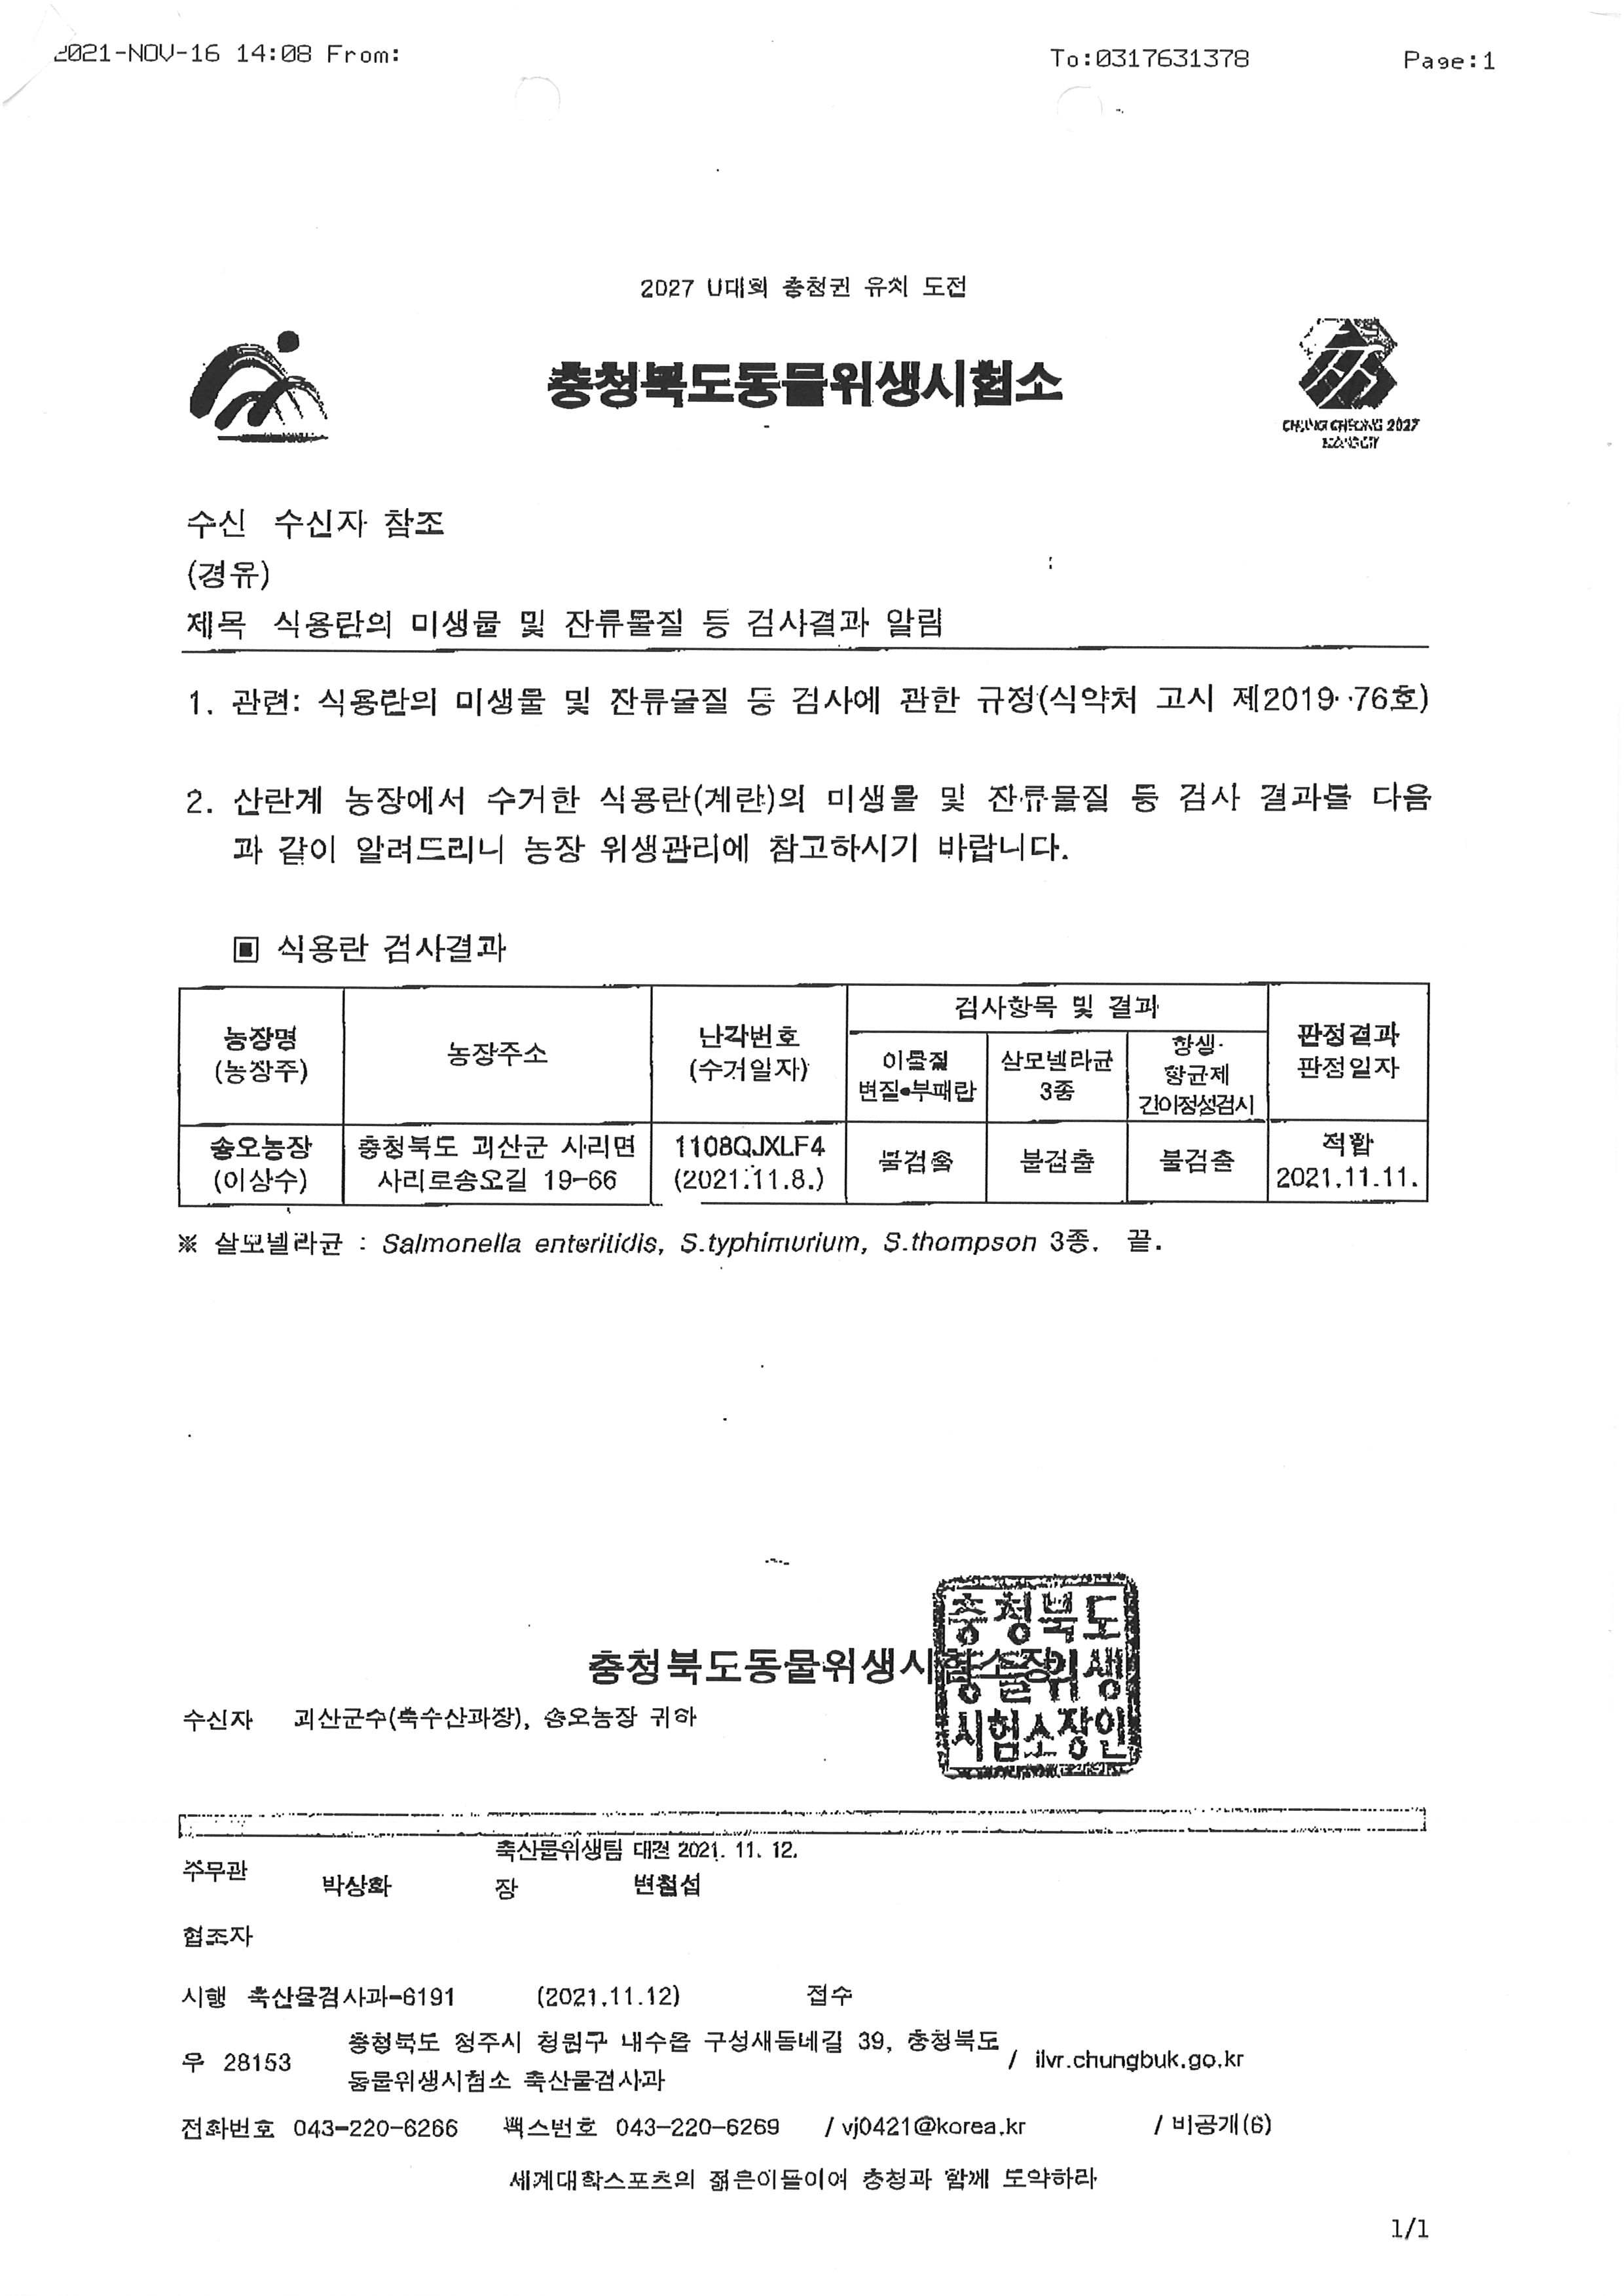 식용란검사성적서01_송오농장_20211110.jpg